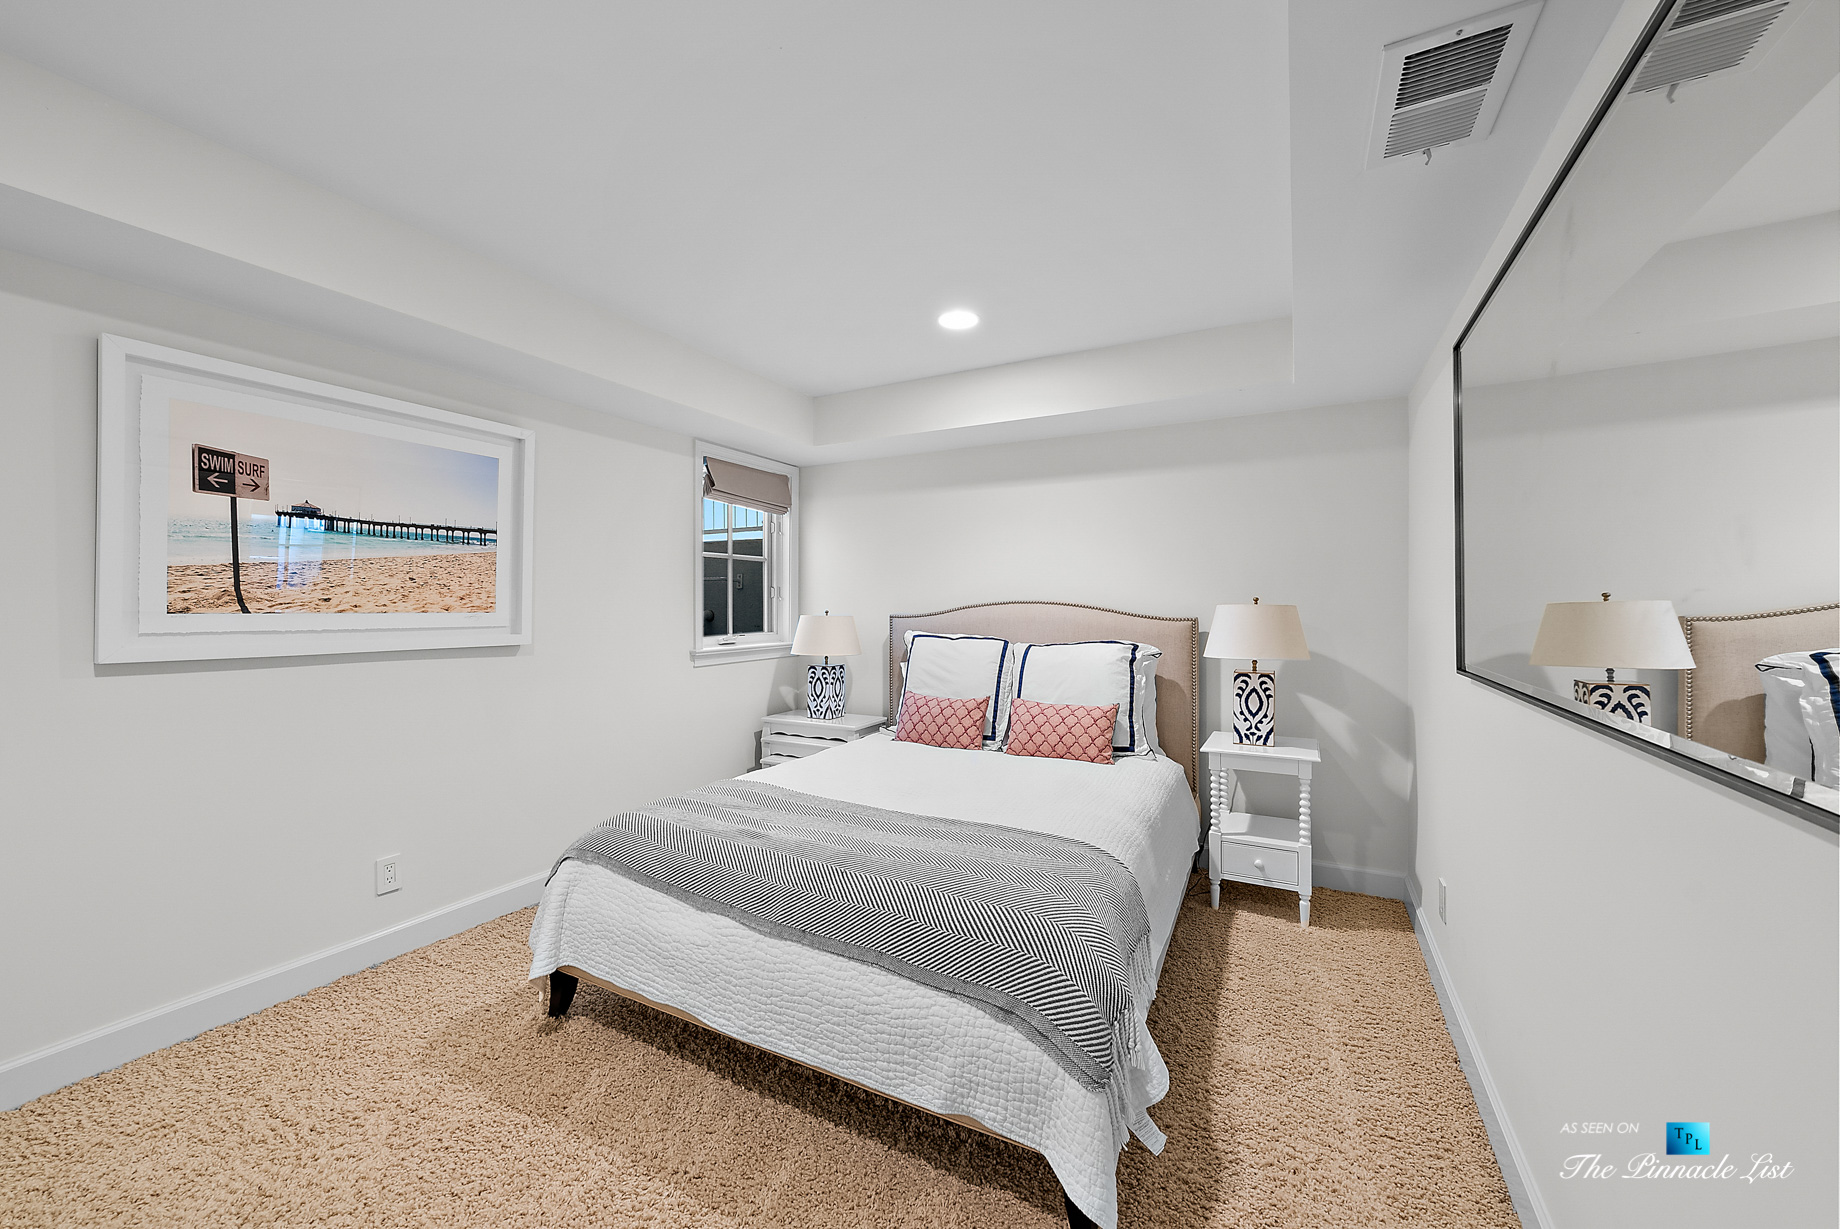 877 8th Street, Manhattan Beach, CA, USA – Basement Bedroom